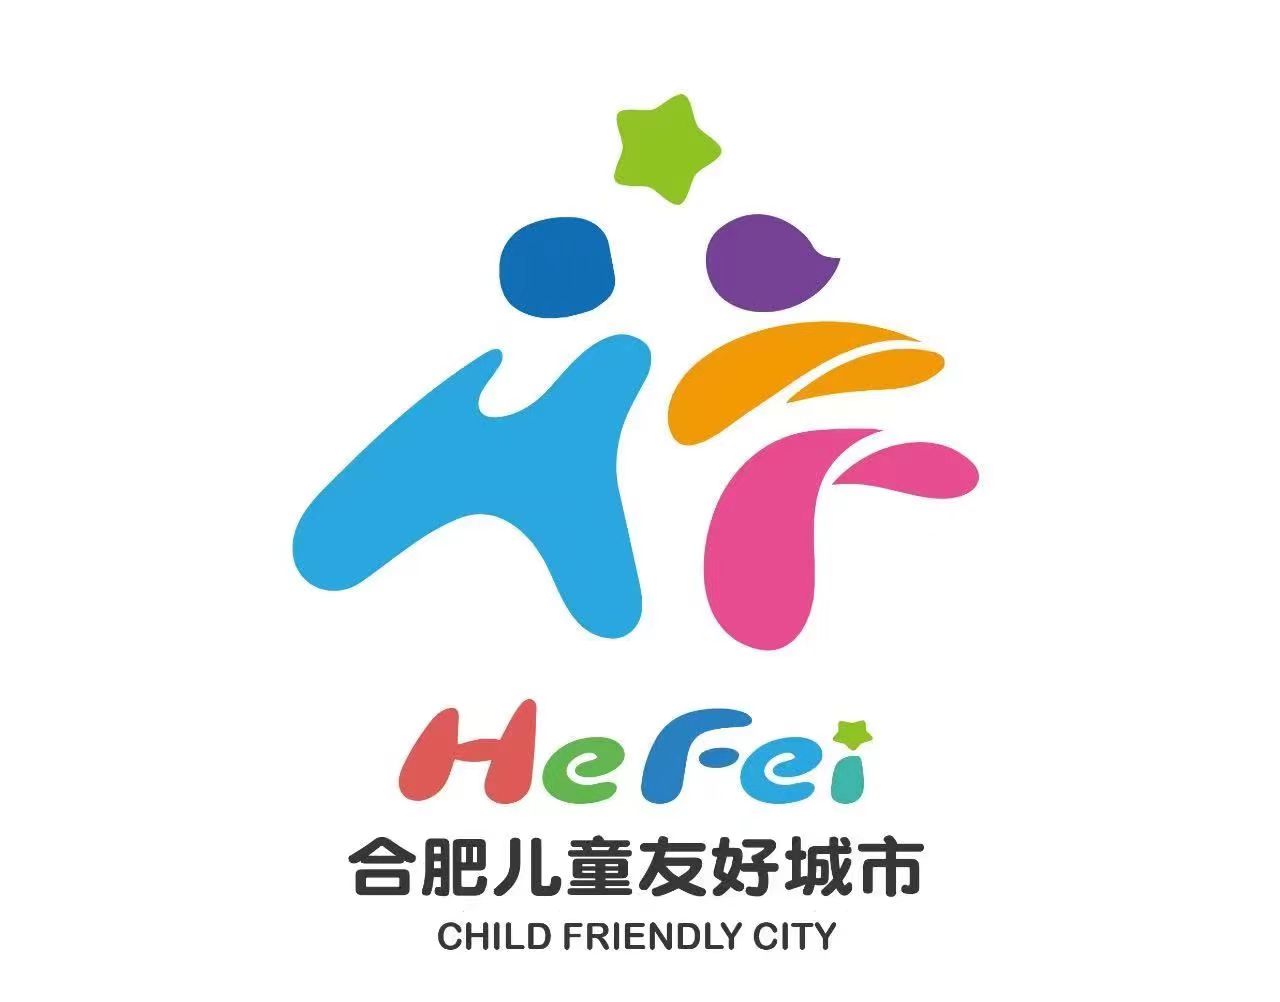 火狐电竞合肥市教育常识儿童友好城市LOGO发布(图1)